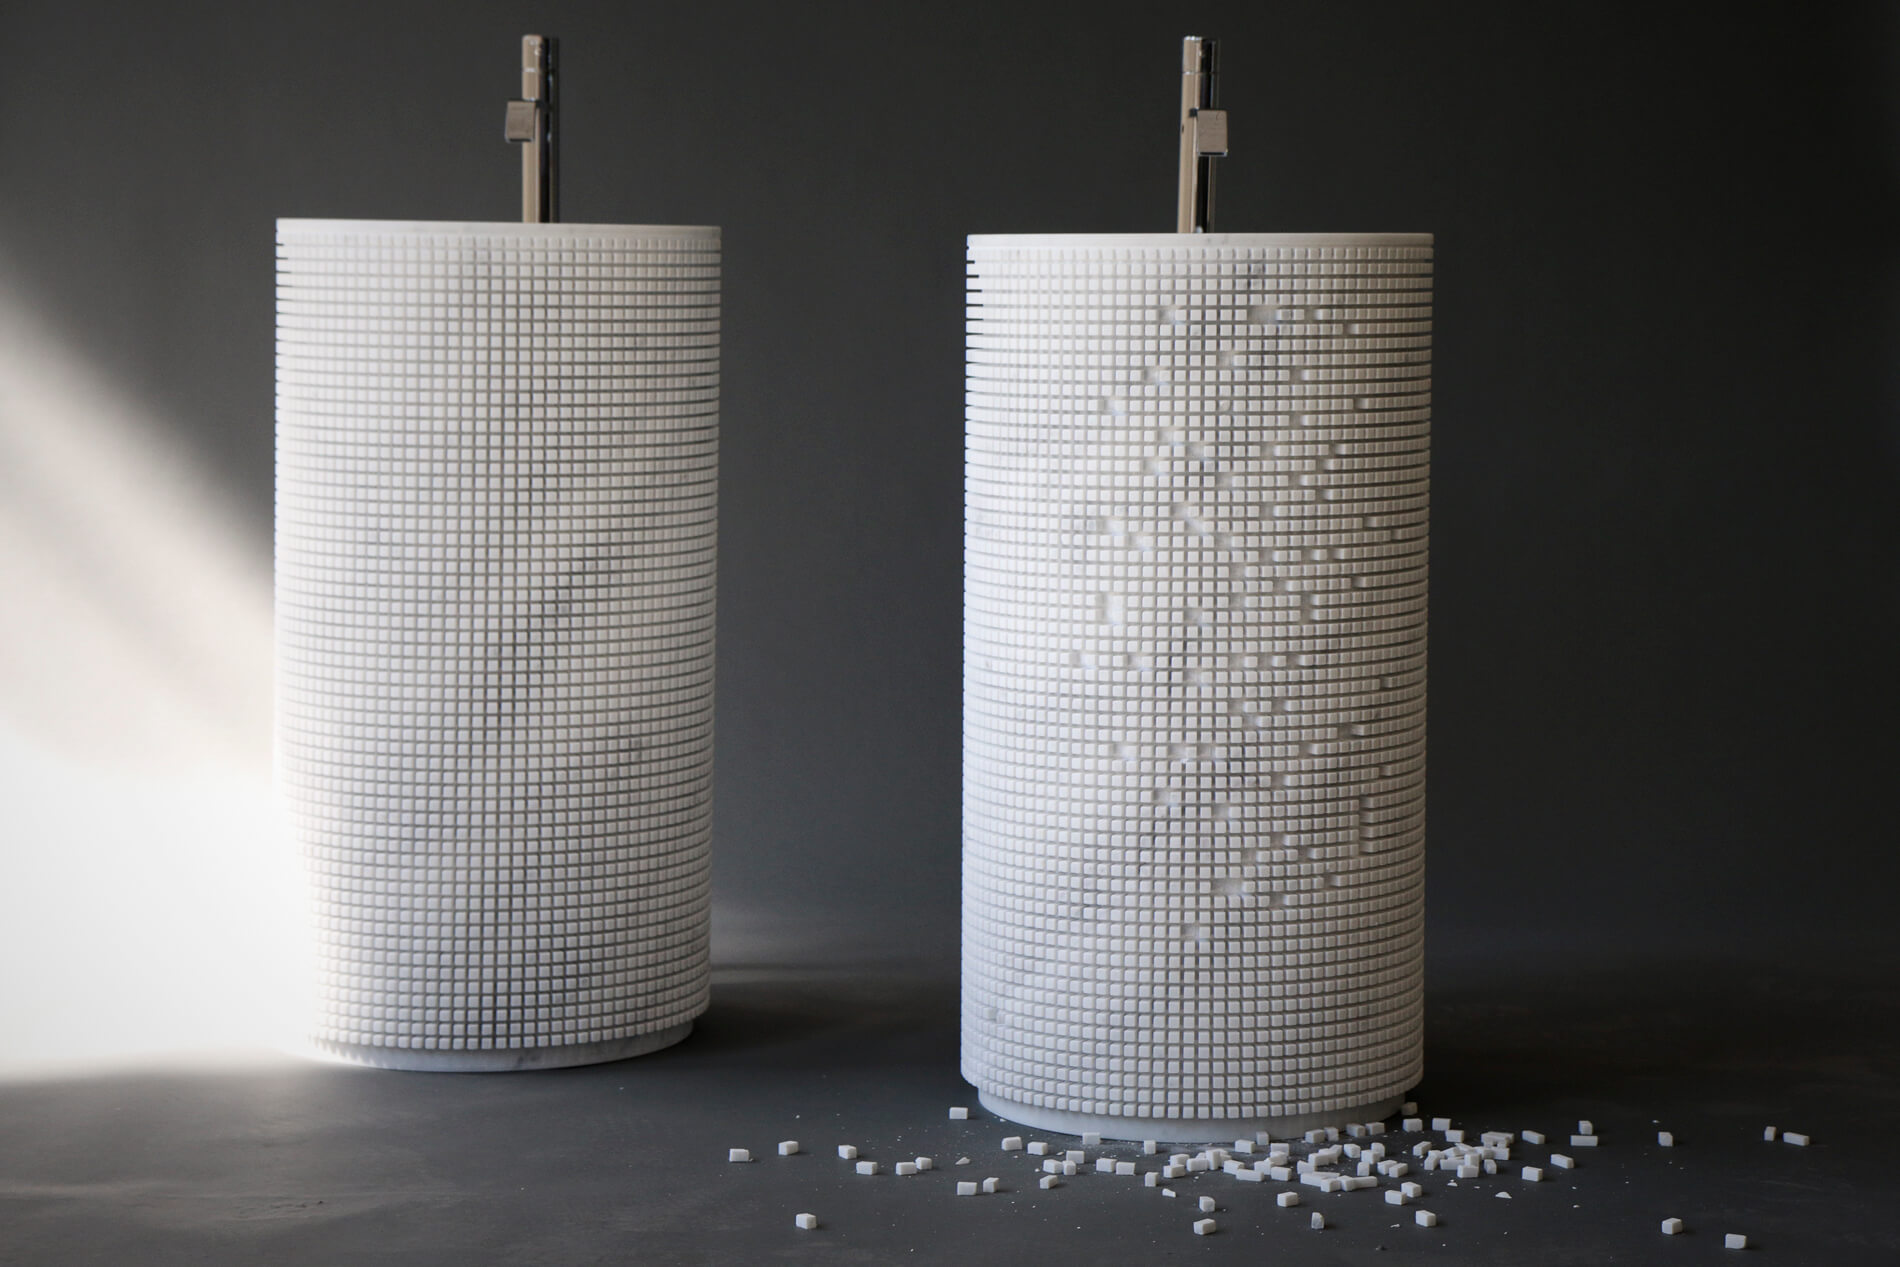 Zwei zylindrische Waschtonnen mit weißem Mosaik - eine komplett, die andere mit herausgelösten Steinchen